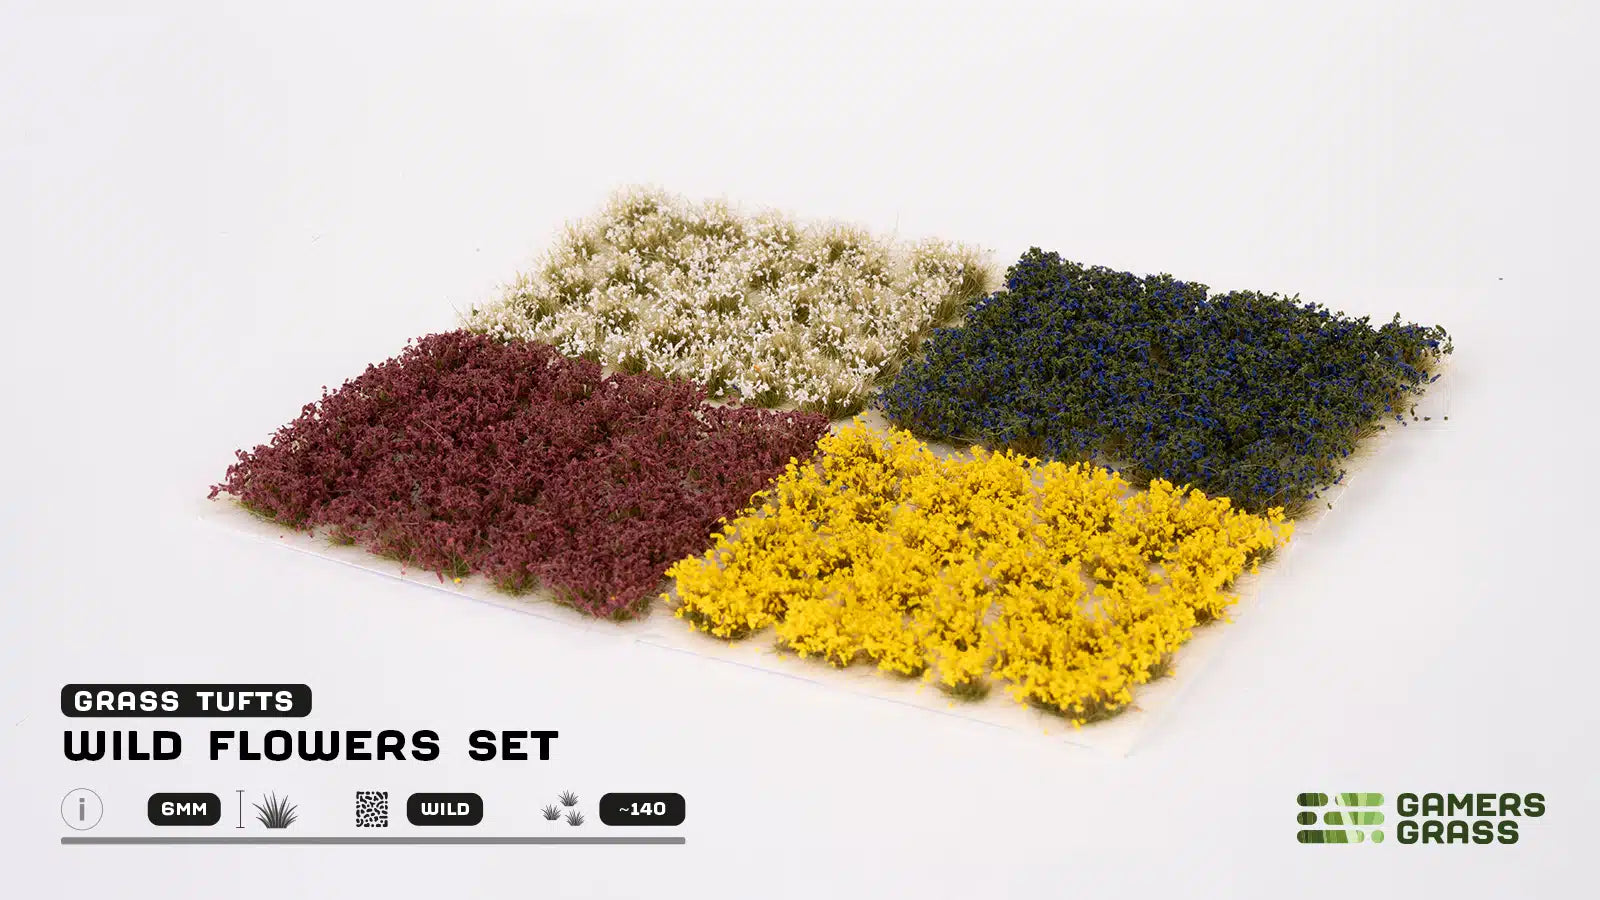 Wild Flowers Set Tufts (Wild) - Gamers Grass - 0